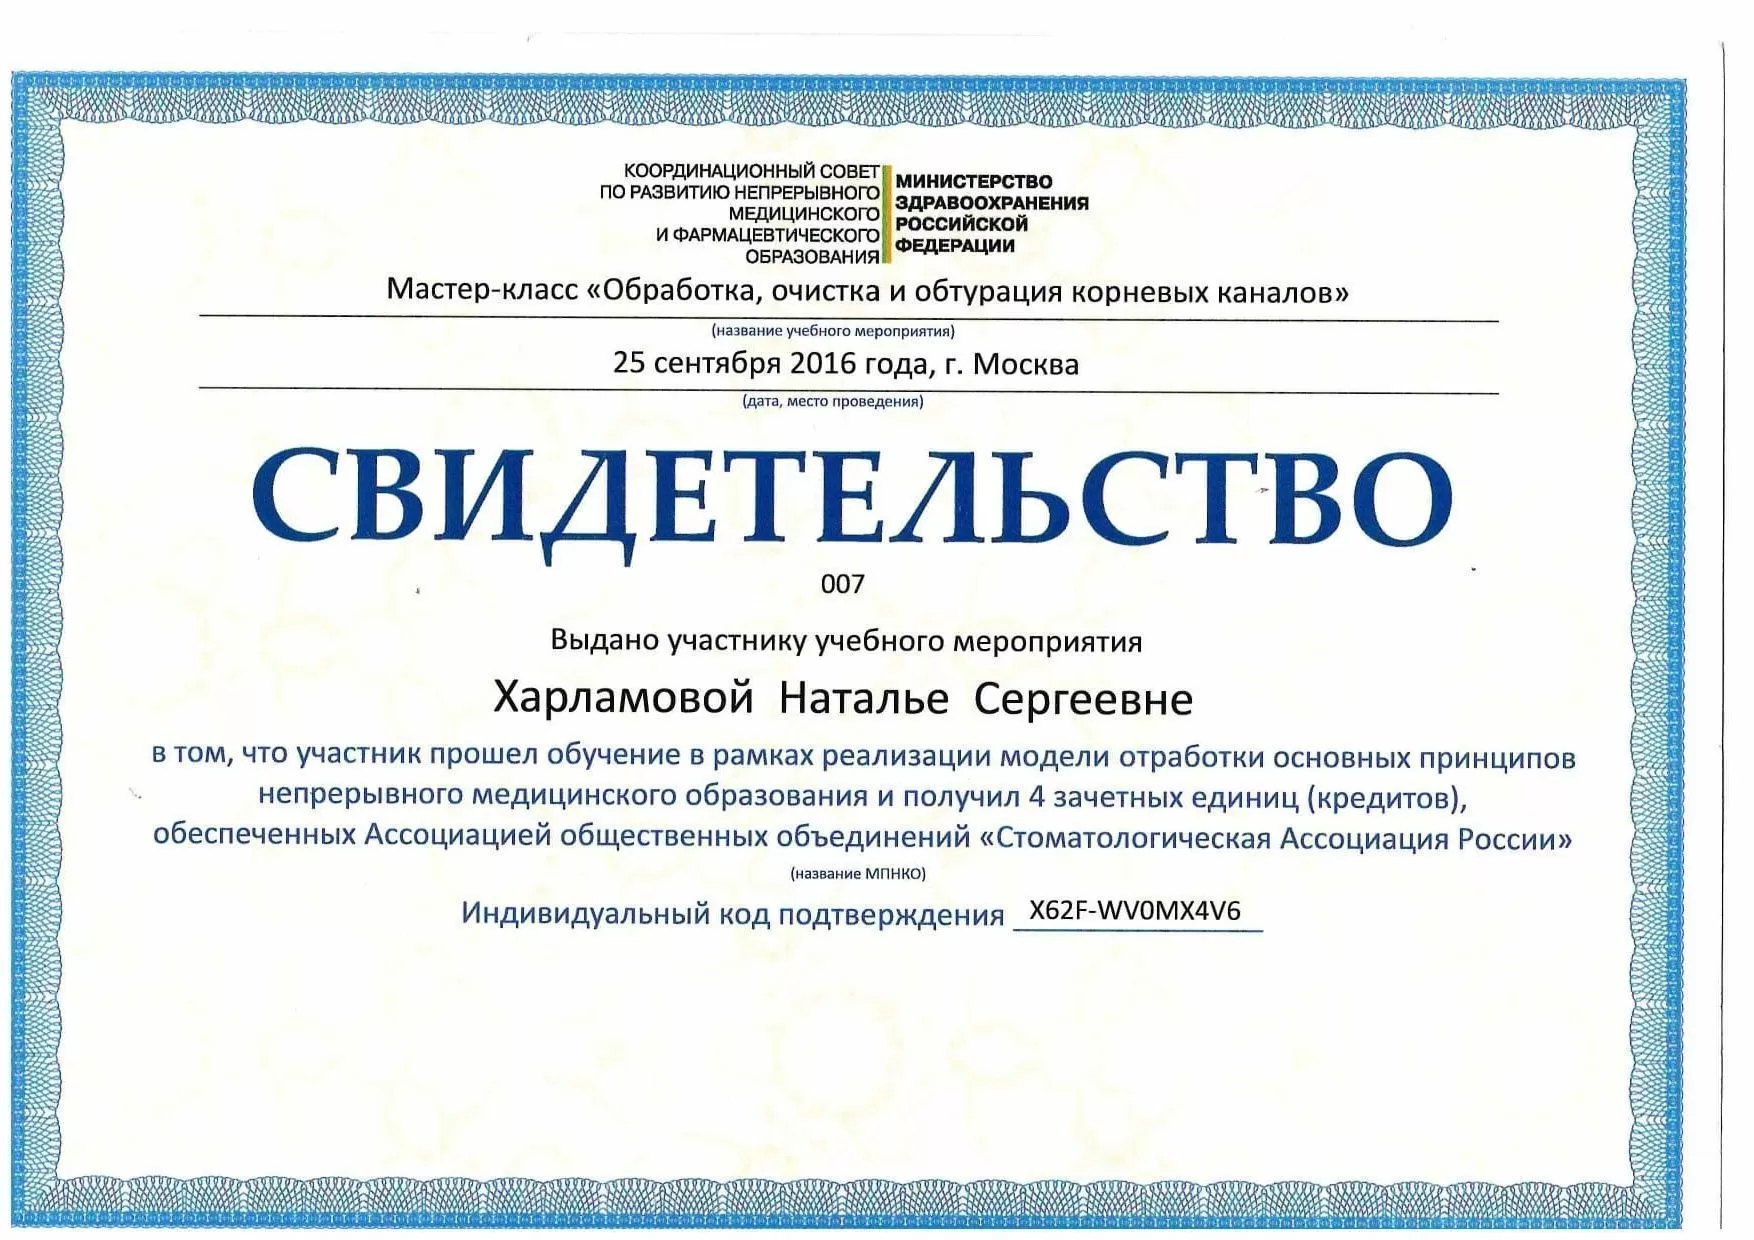 Сертификацы и лицензии Терехина (Харламова) Наталья Сергеевна